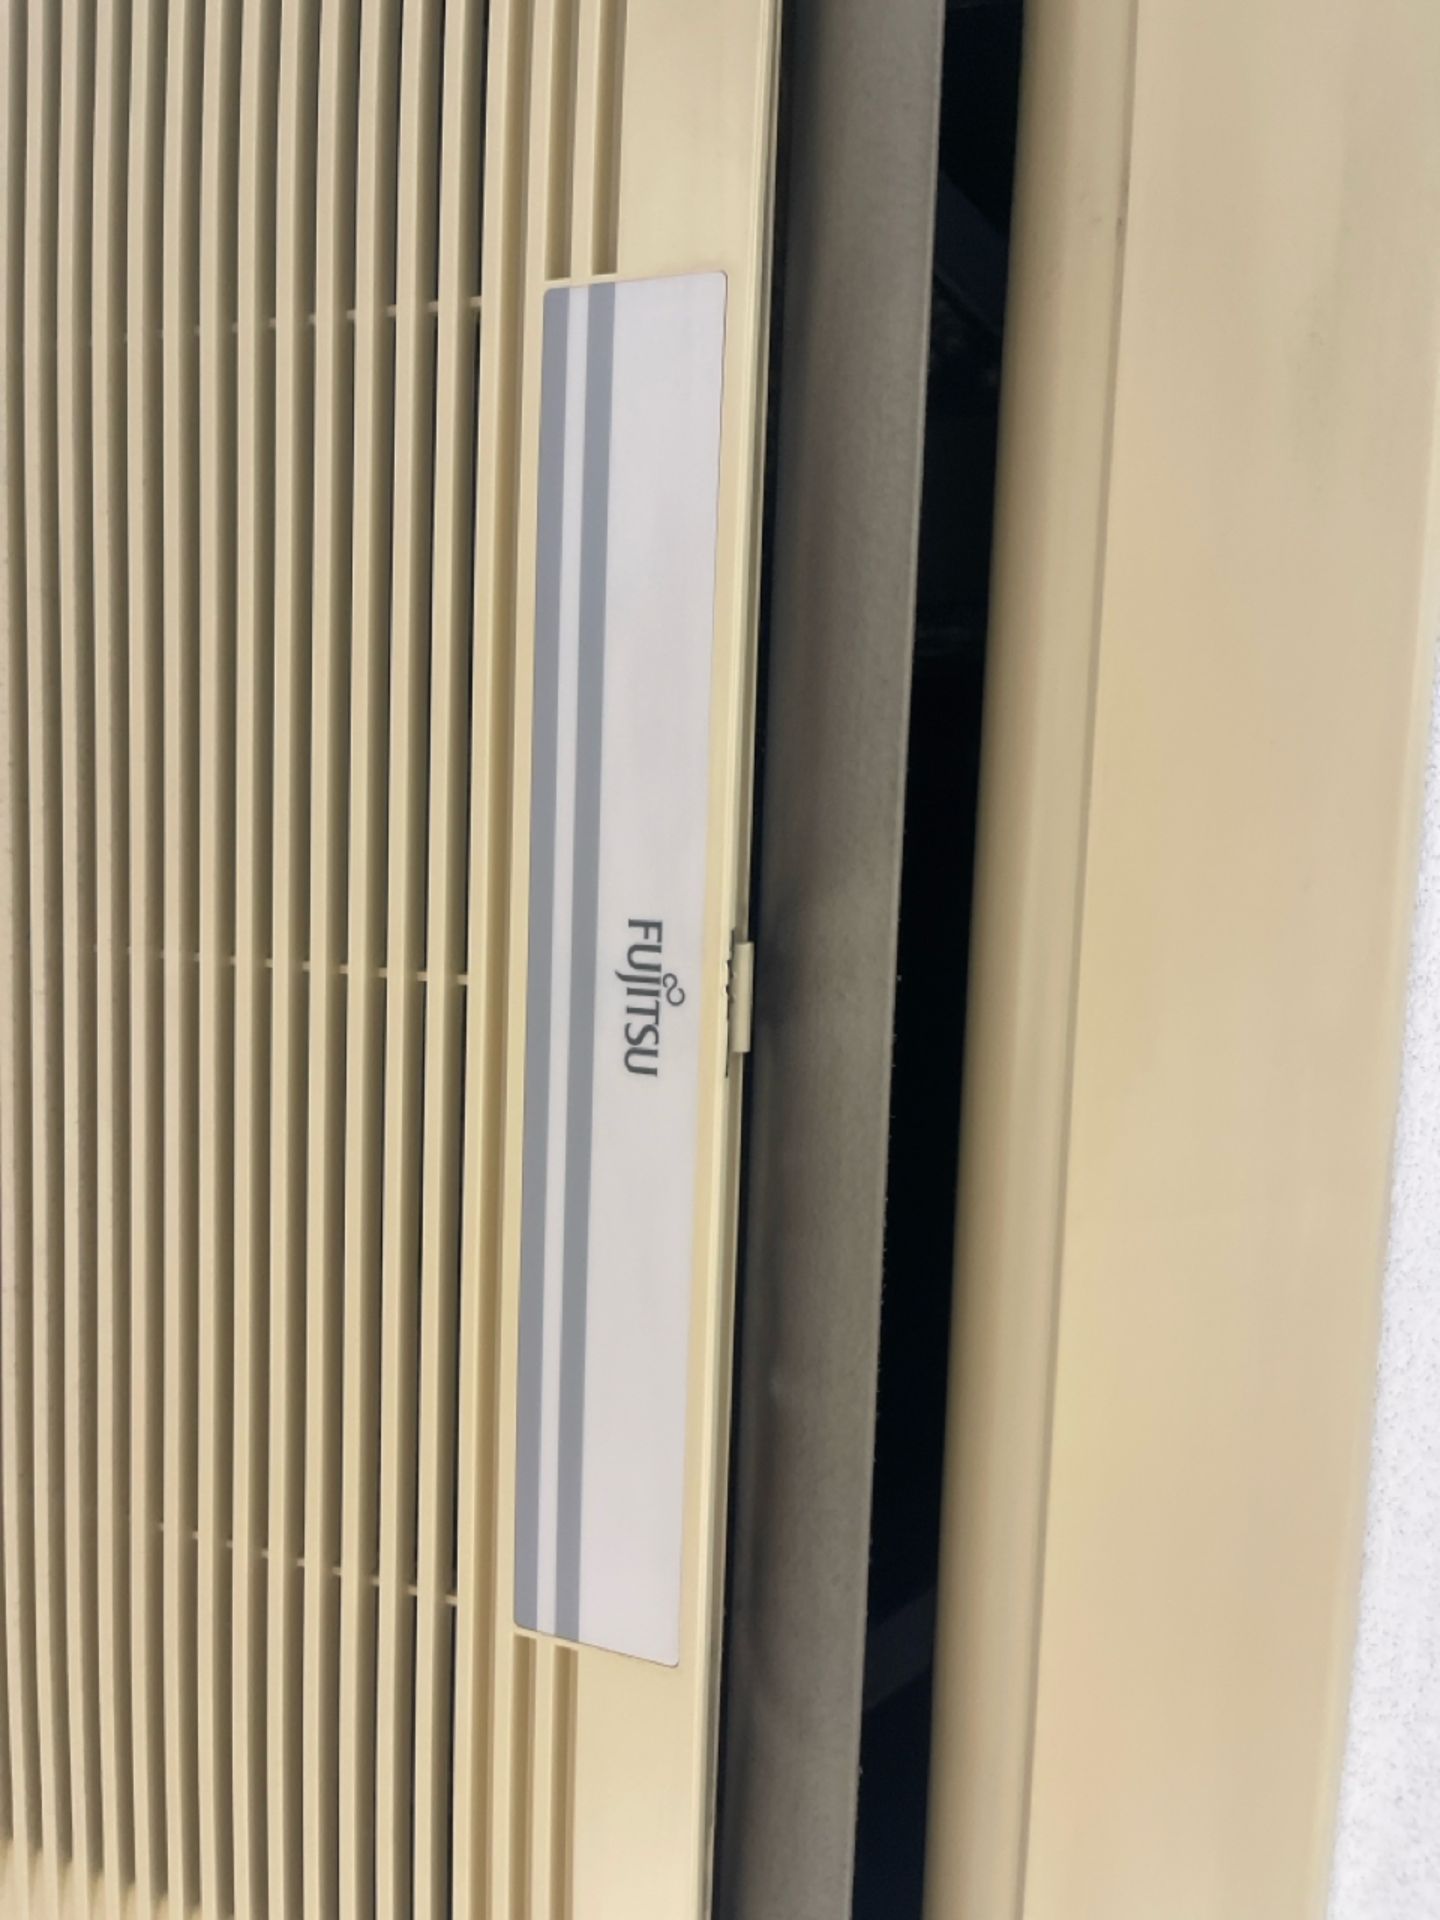 Fujitsu Air Conditioning Ceiling Cassette - Bild 2 aus 2